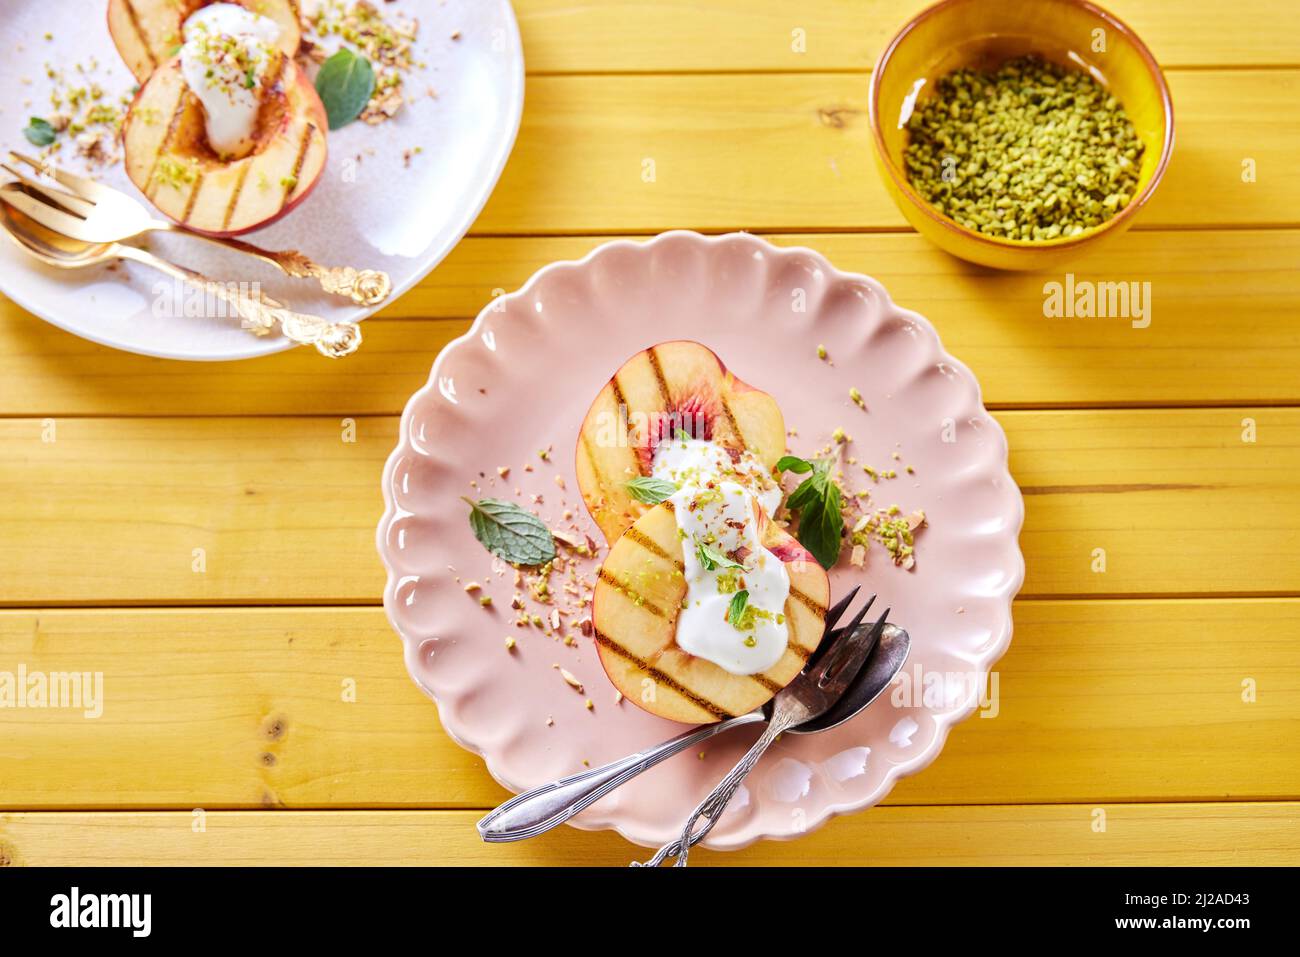 Vista dall'alto del piatto con deliziose nettarine dolci con yogurt e foglie di menta serviti su tavola di legno con ciotola di pistacchi Foto Stock